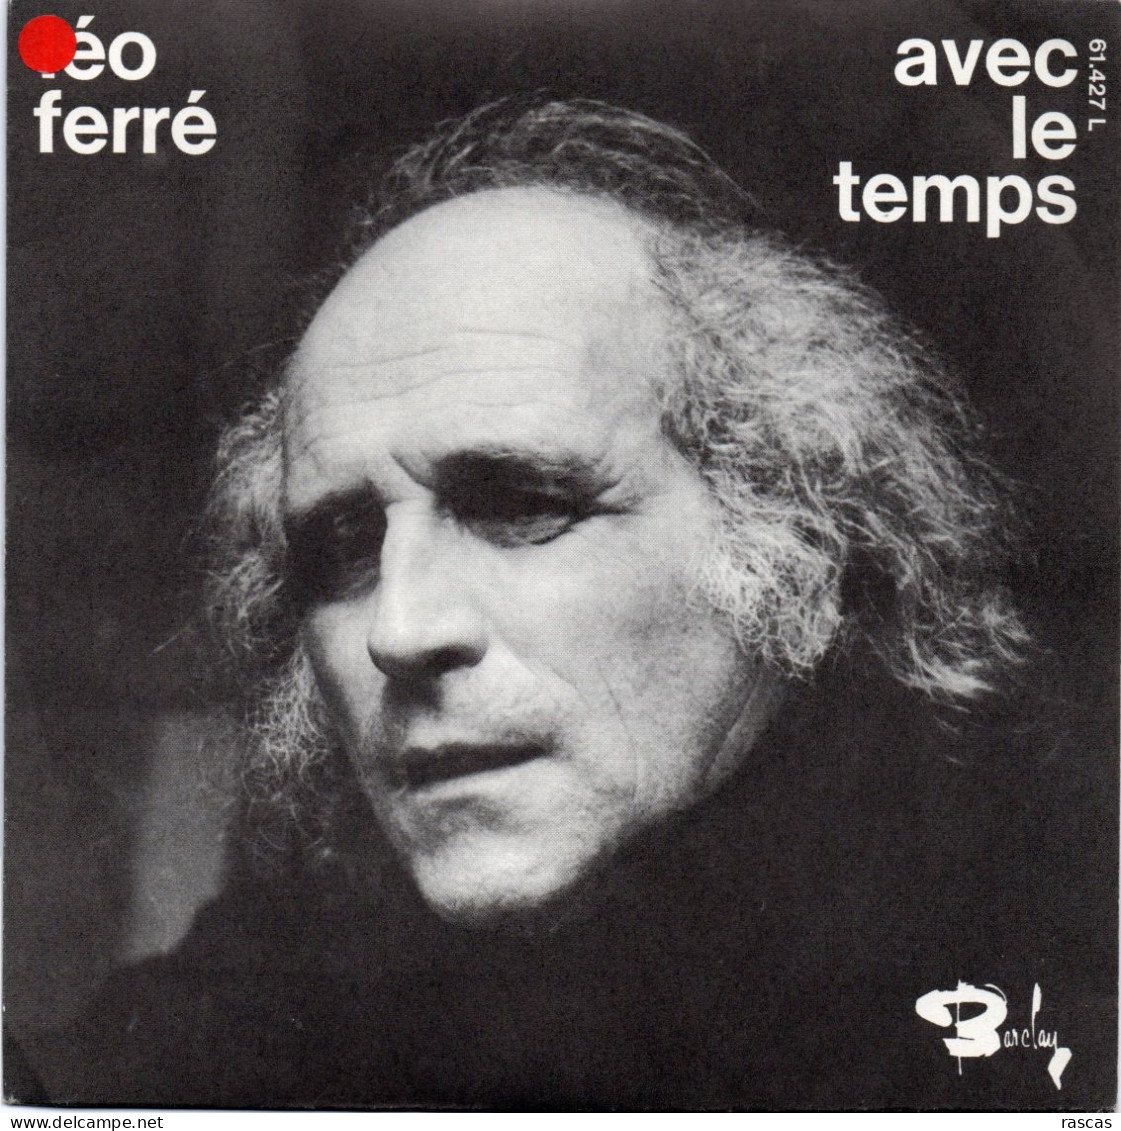 DISQUE VINYL 45 T DU CHANTEUR FRANCAIS LEO FERRE - AVEC LE TEMPS - Other - French Music